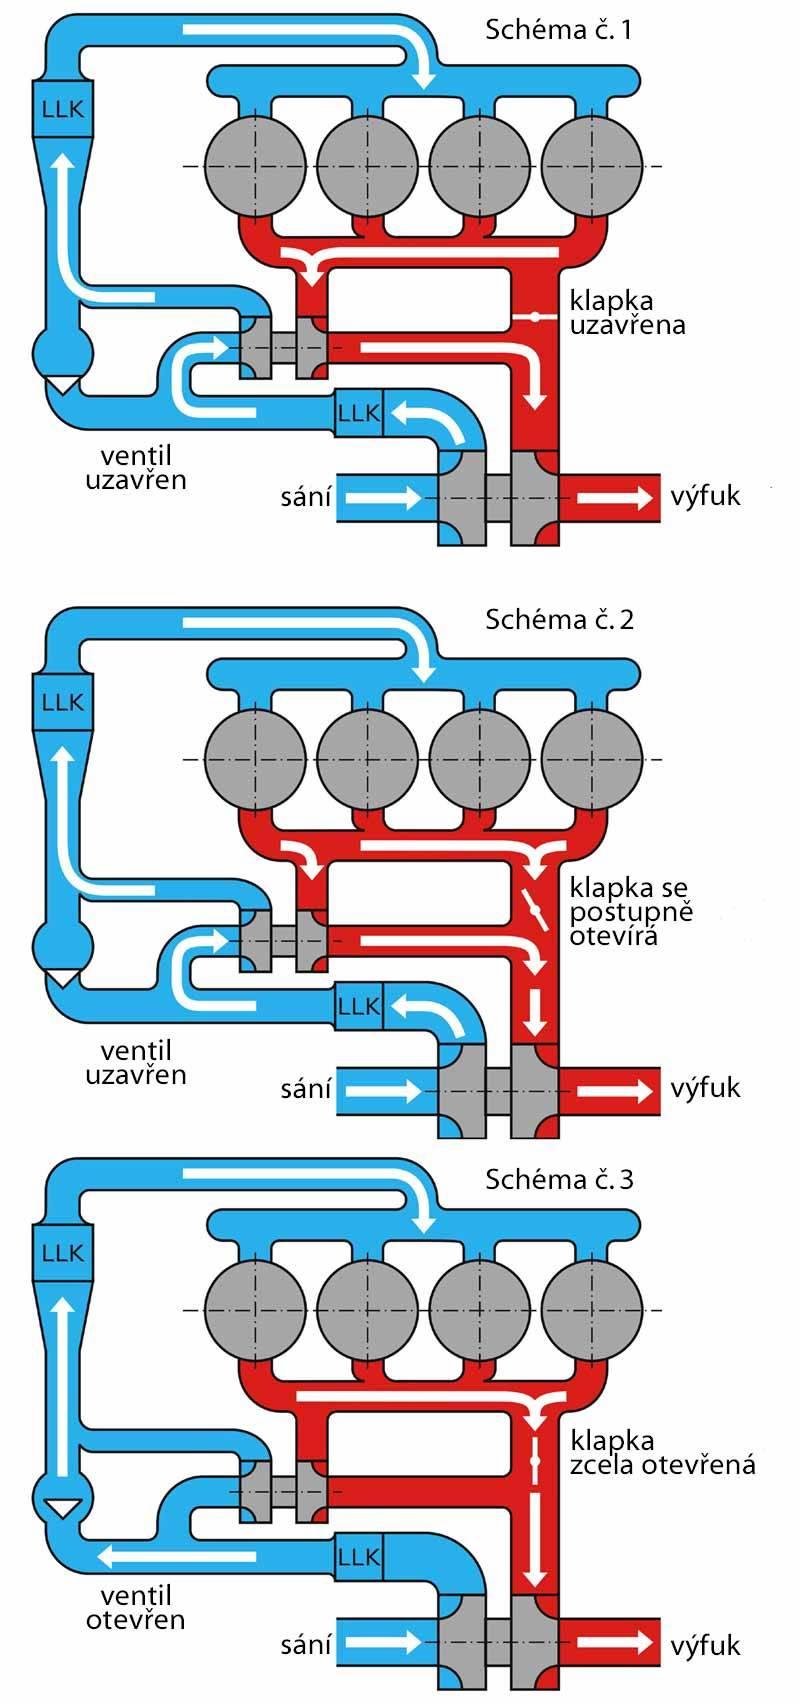 Schéma č. 1 režim do 1800 ot/min. První schéma zobrazuje celý systém v pásmu nízkých otáček (do 1800 ot/min).